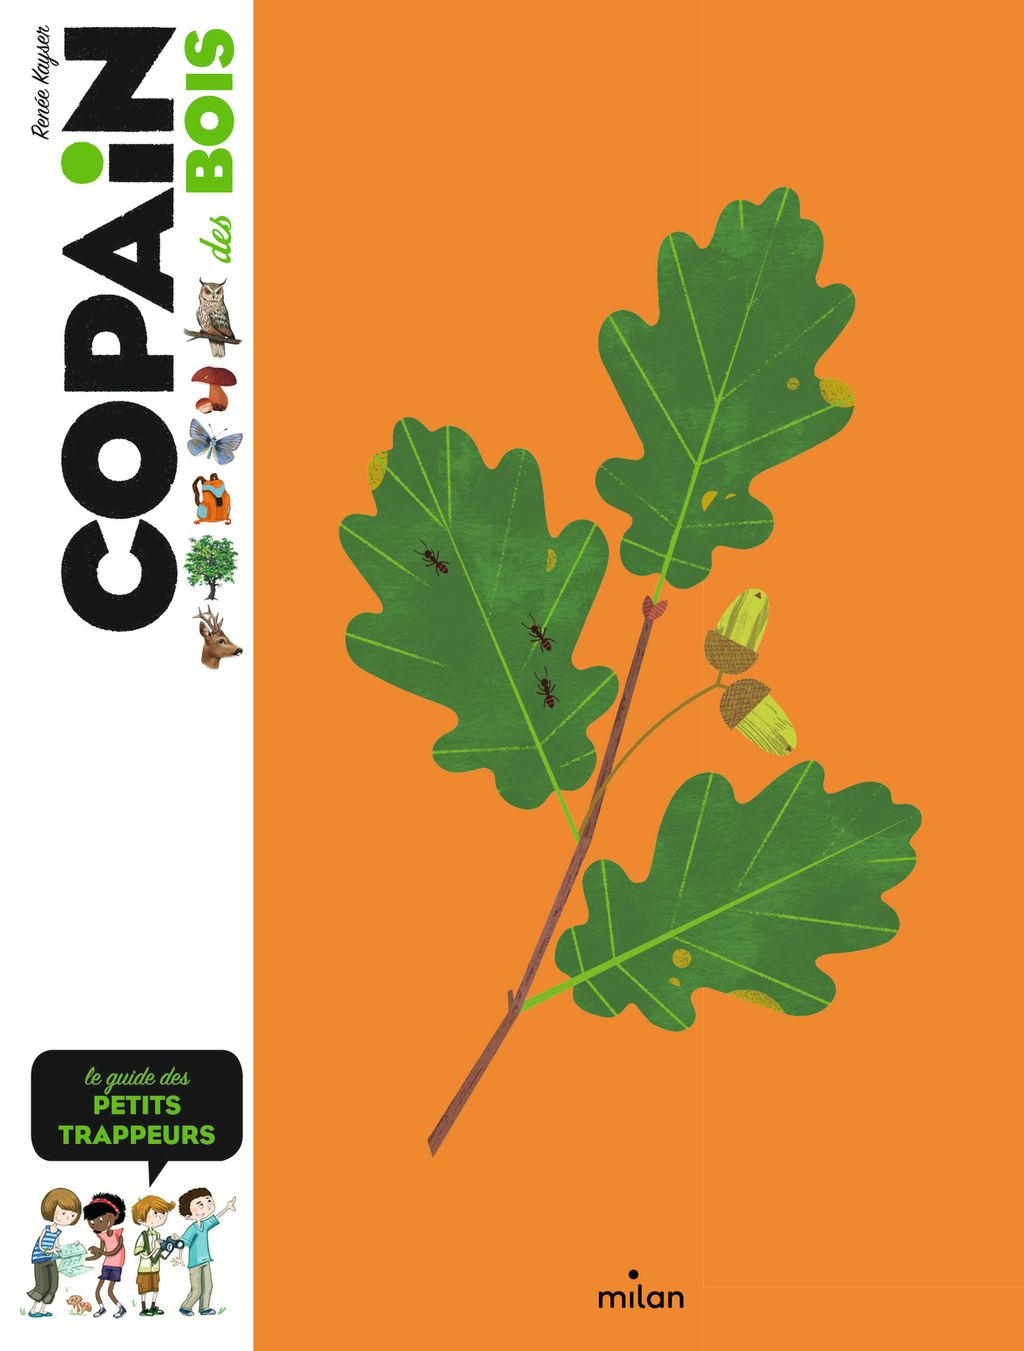 « Copain des bois » cover